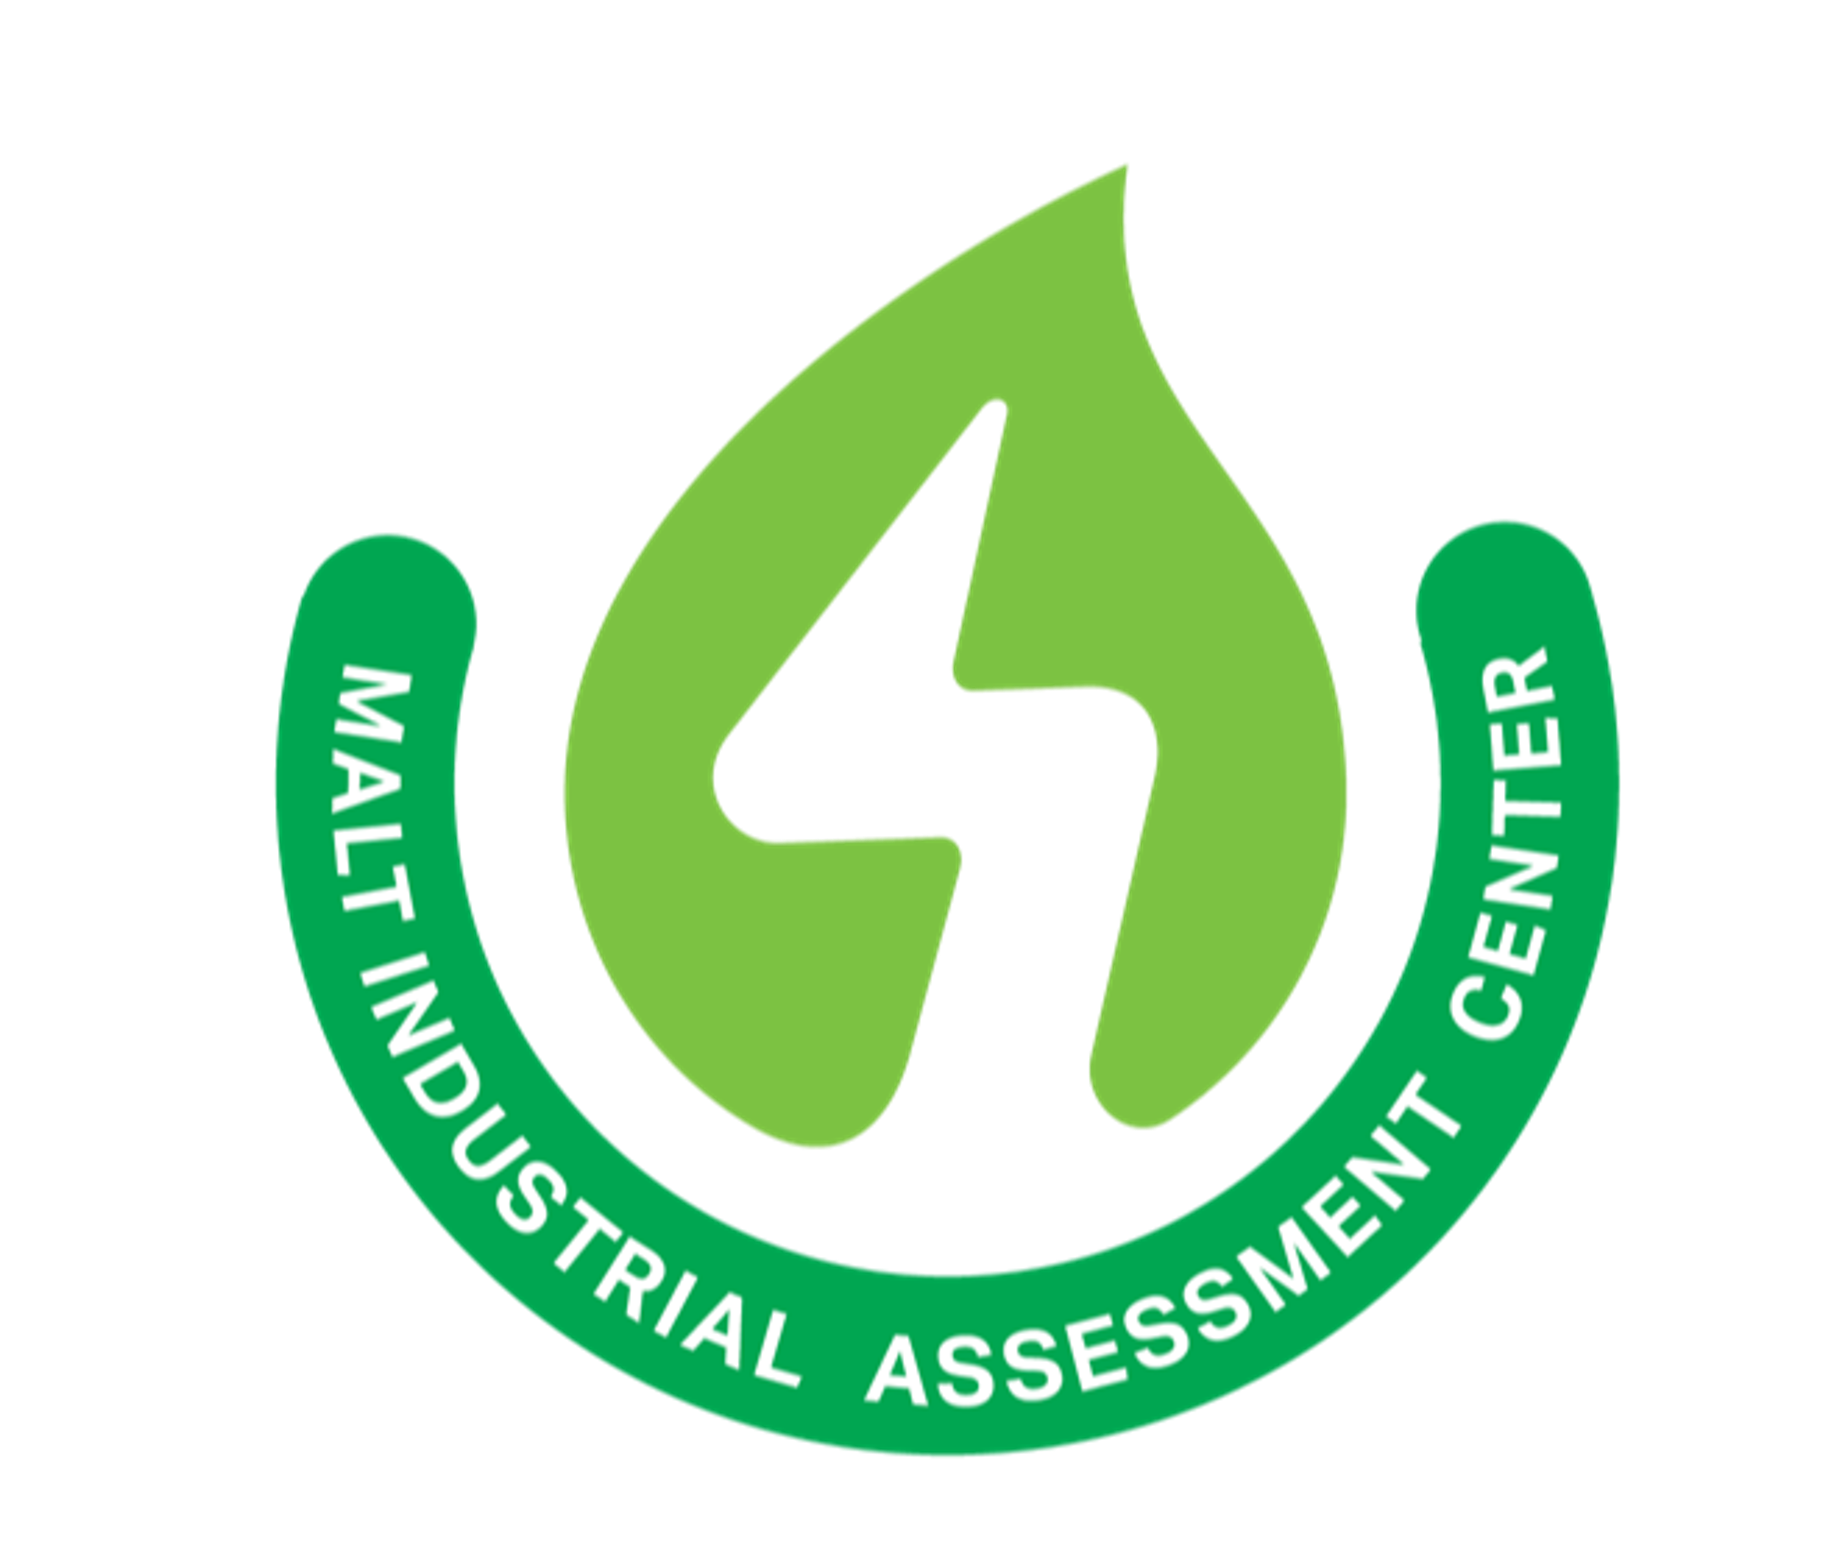 MALT Industrial Assessment Center logo of a green flame